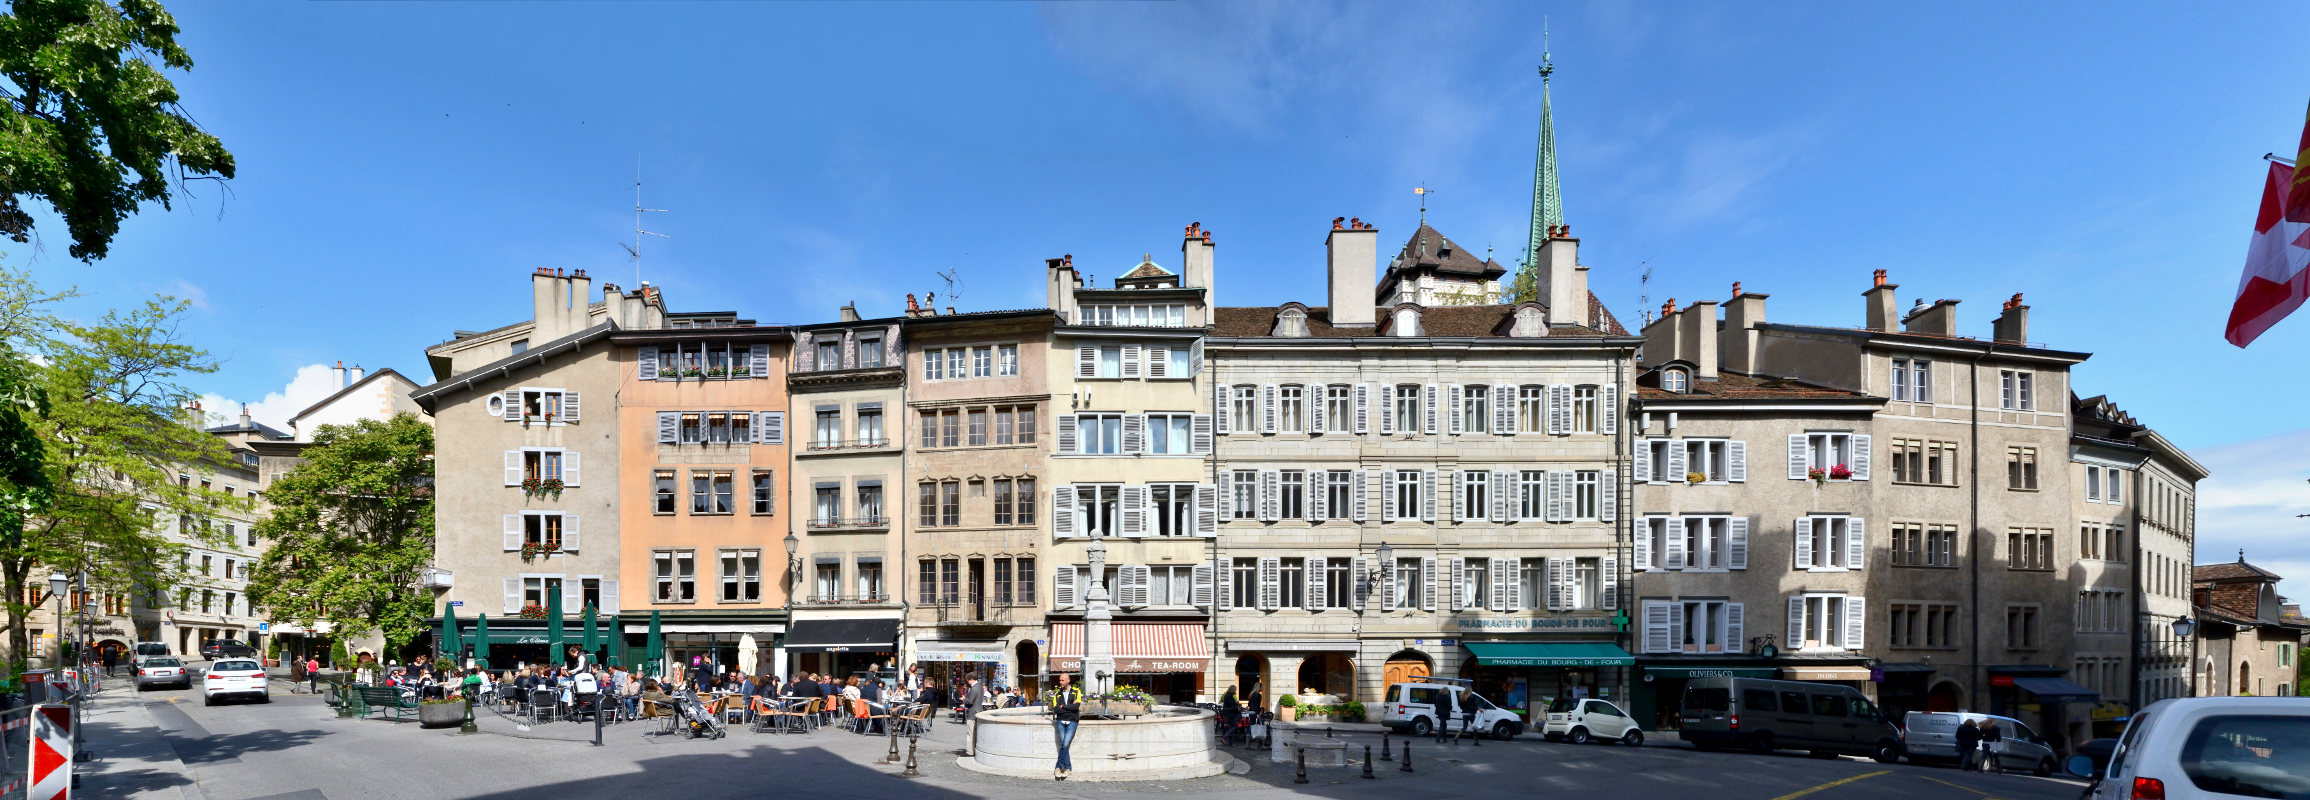 Geneva Square in Old Town